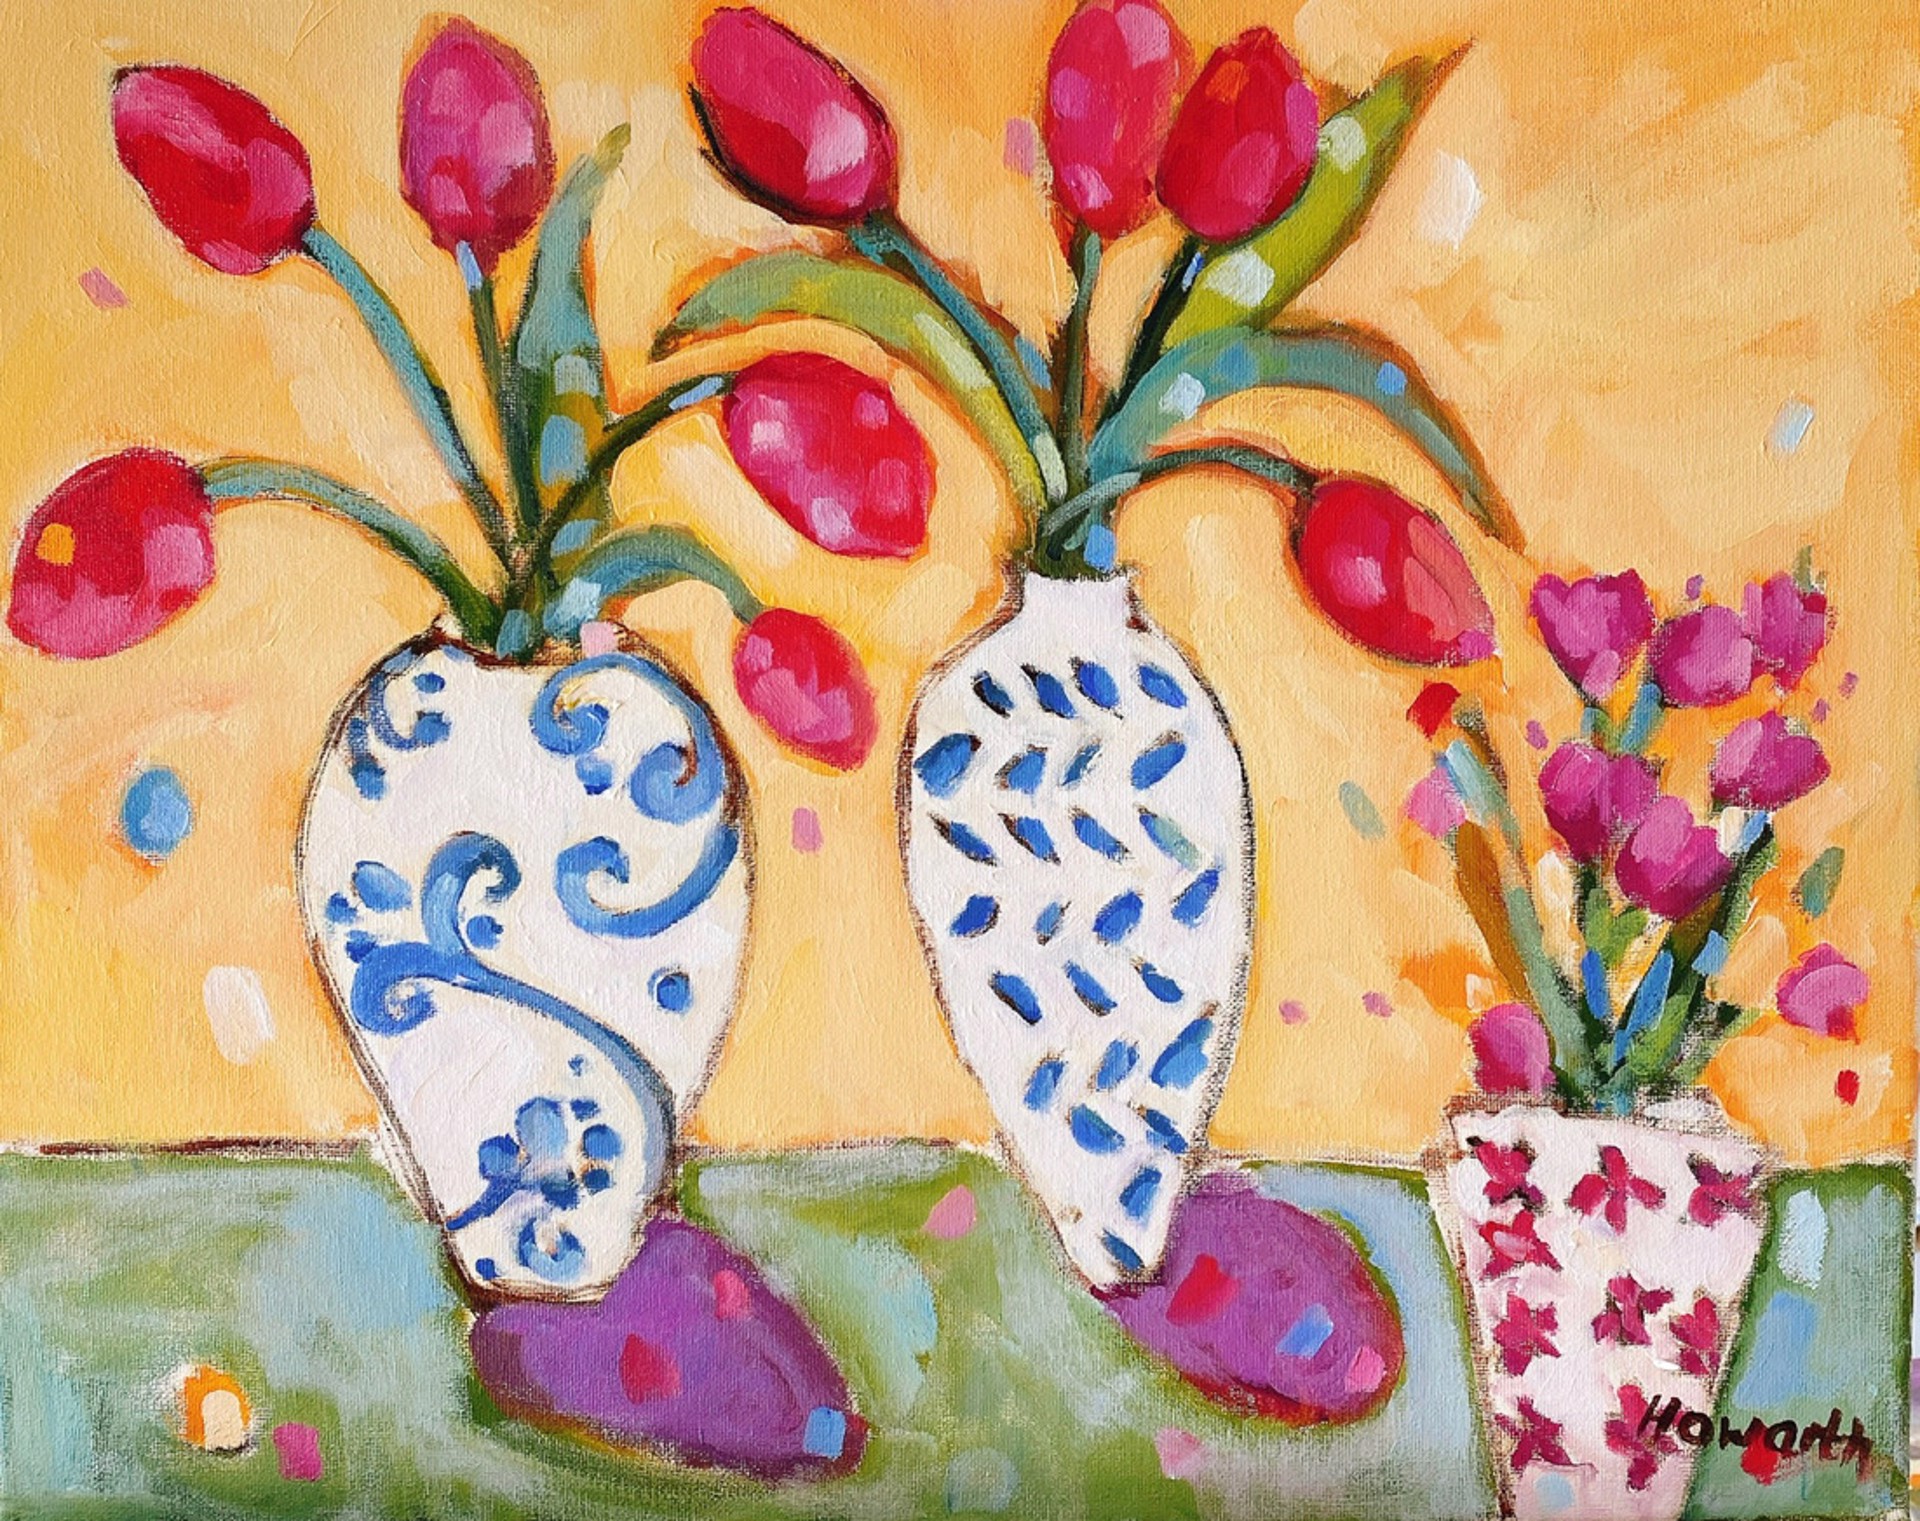 Three Vases by Katrina Howarth